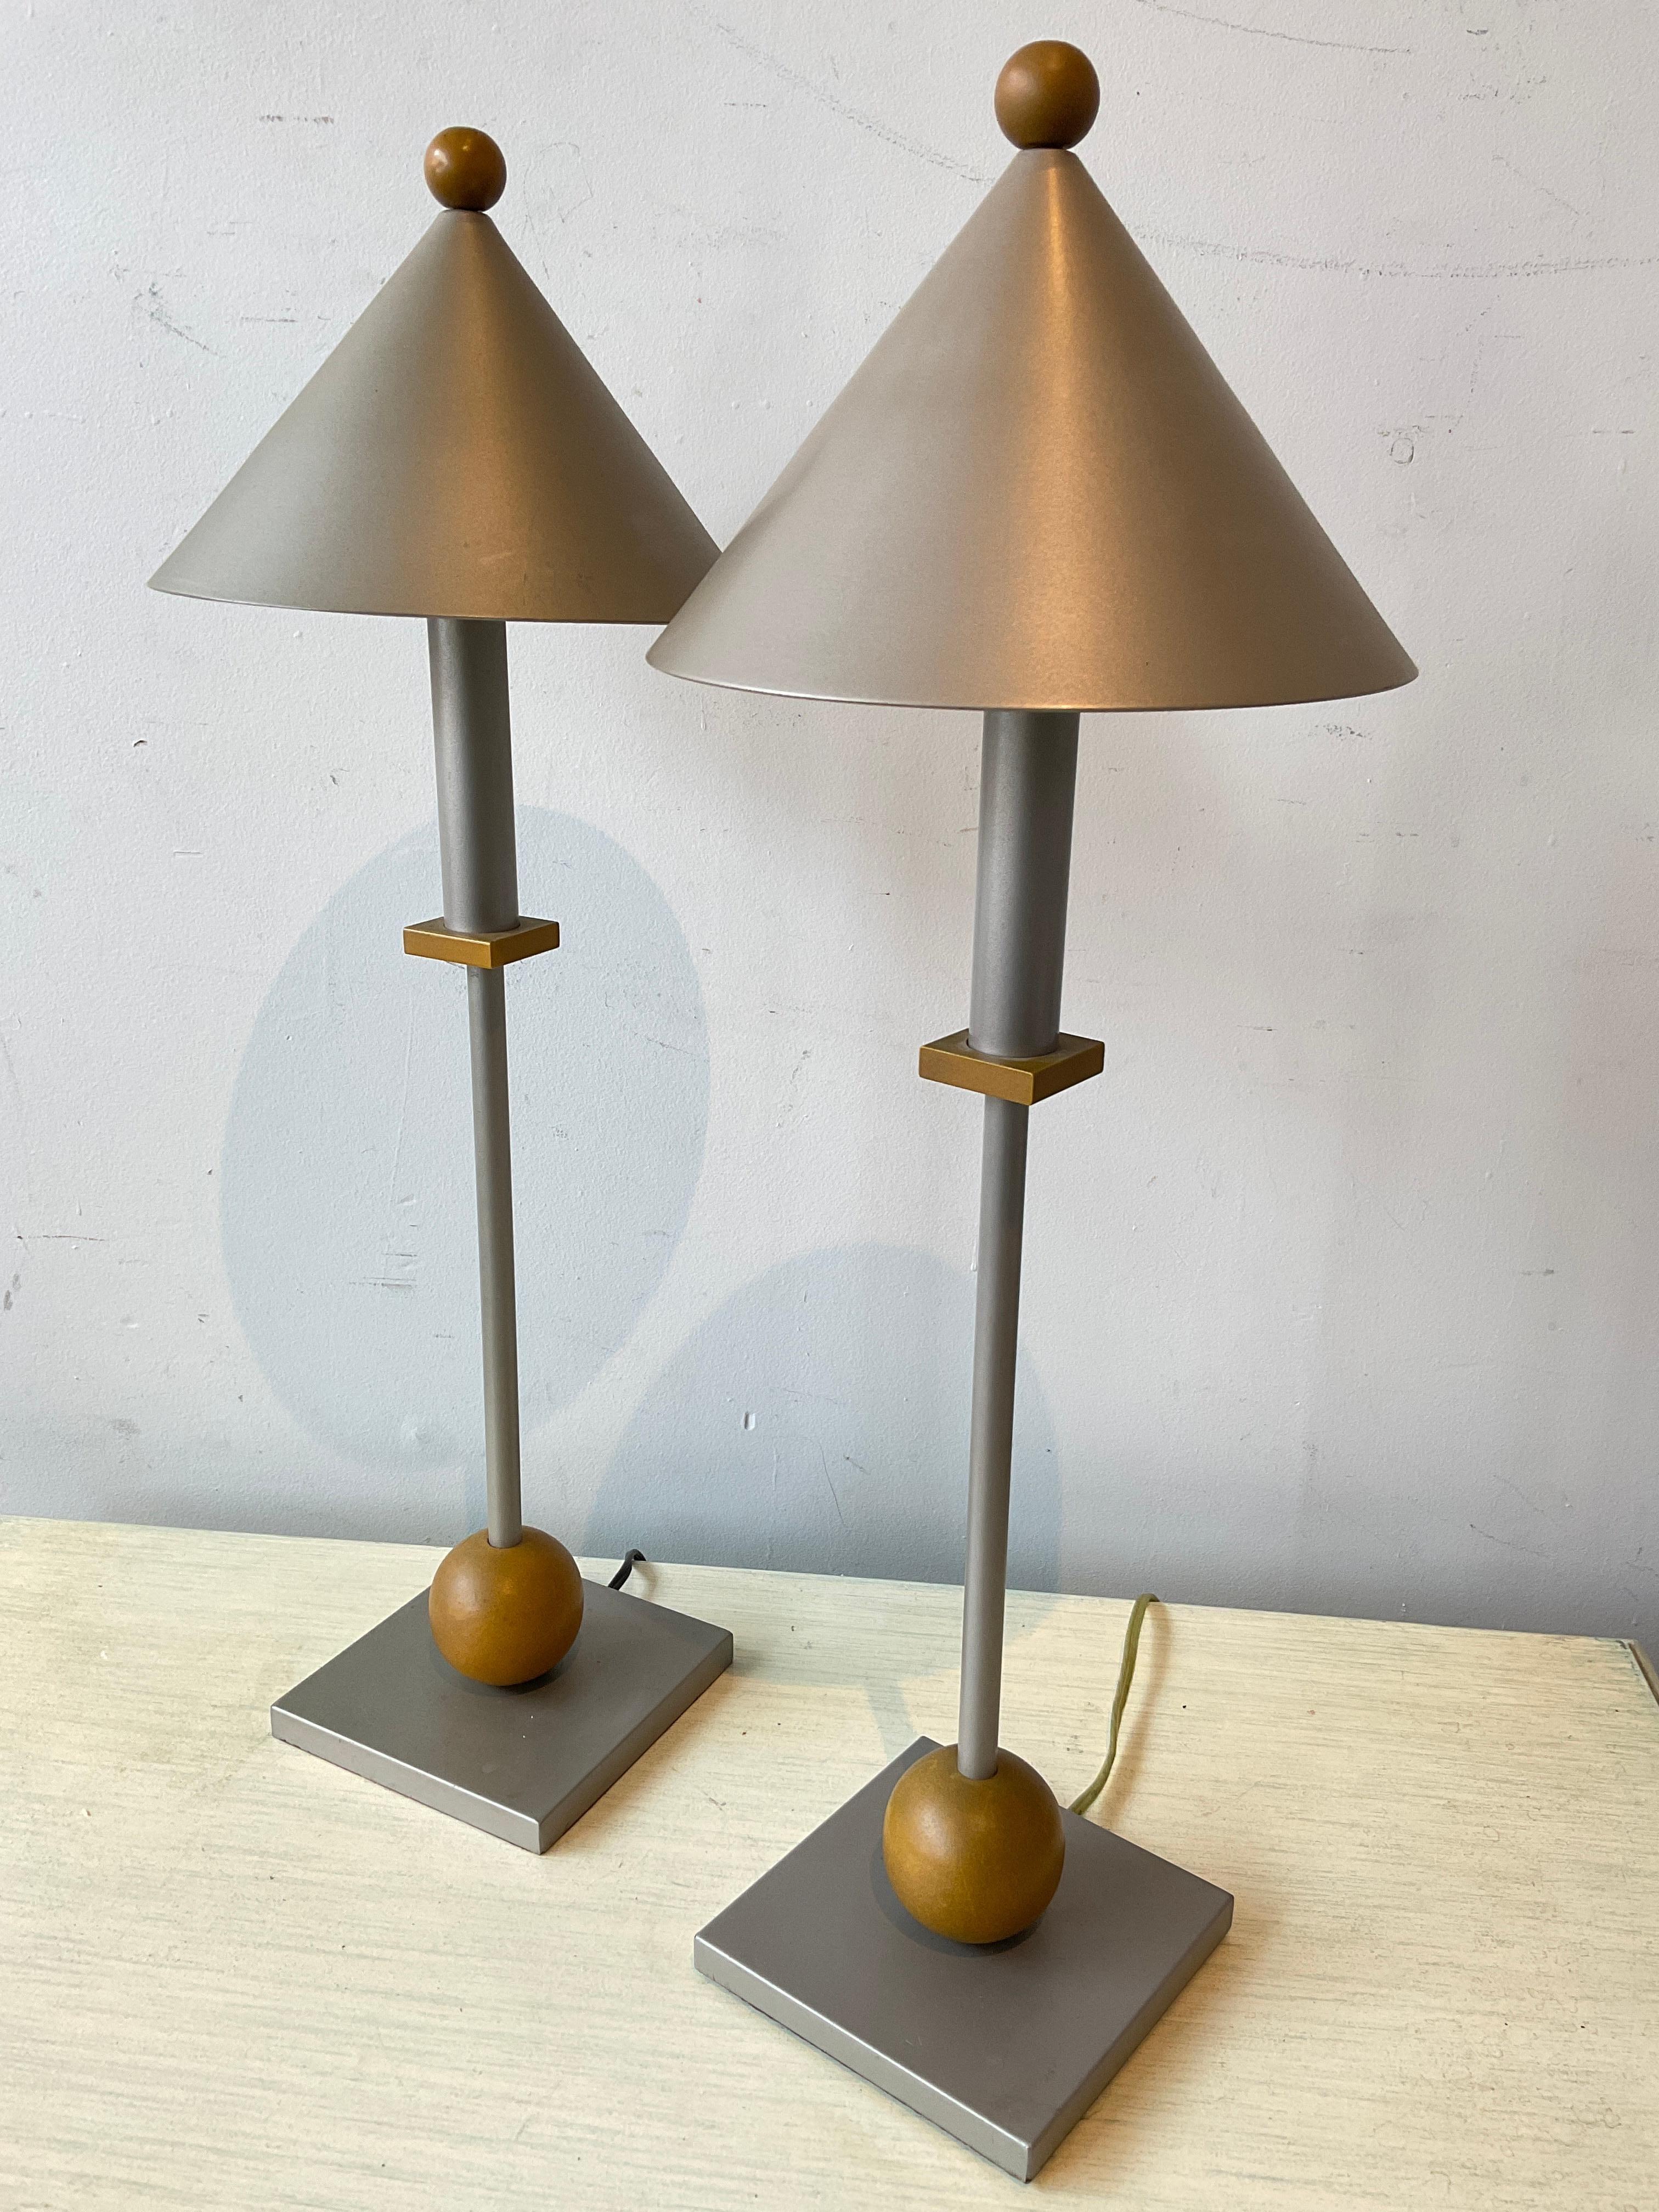 Zwei kleine Tischlampen im Memphis-Stil von George Kovacs.
Originalverkabelung, muss neu verkabelt werden.